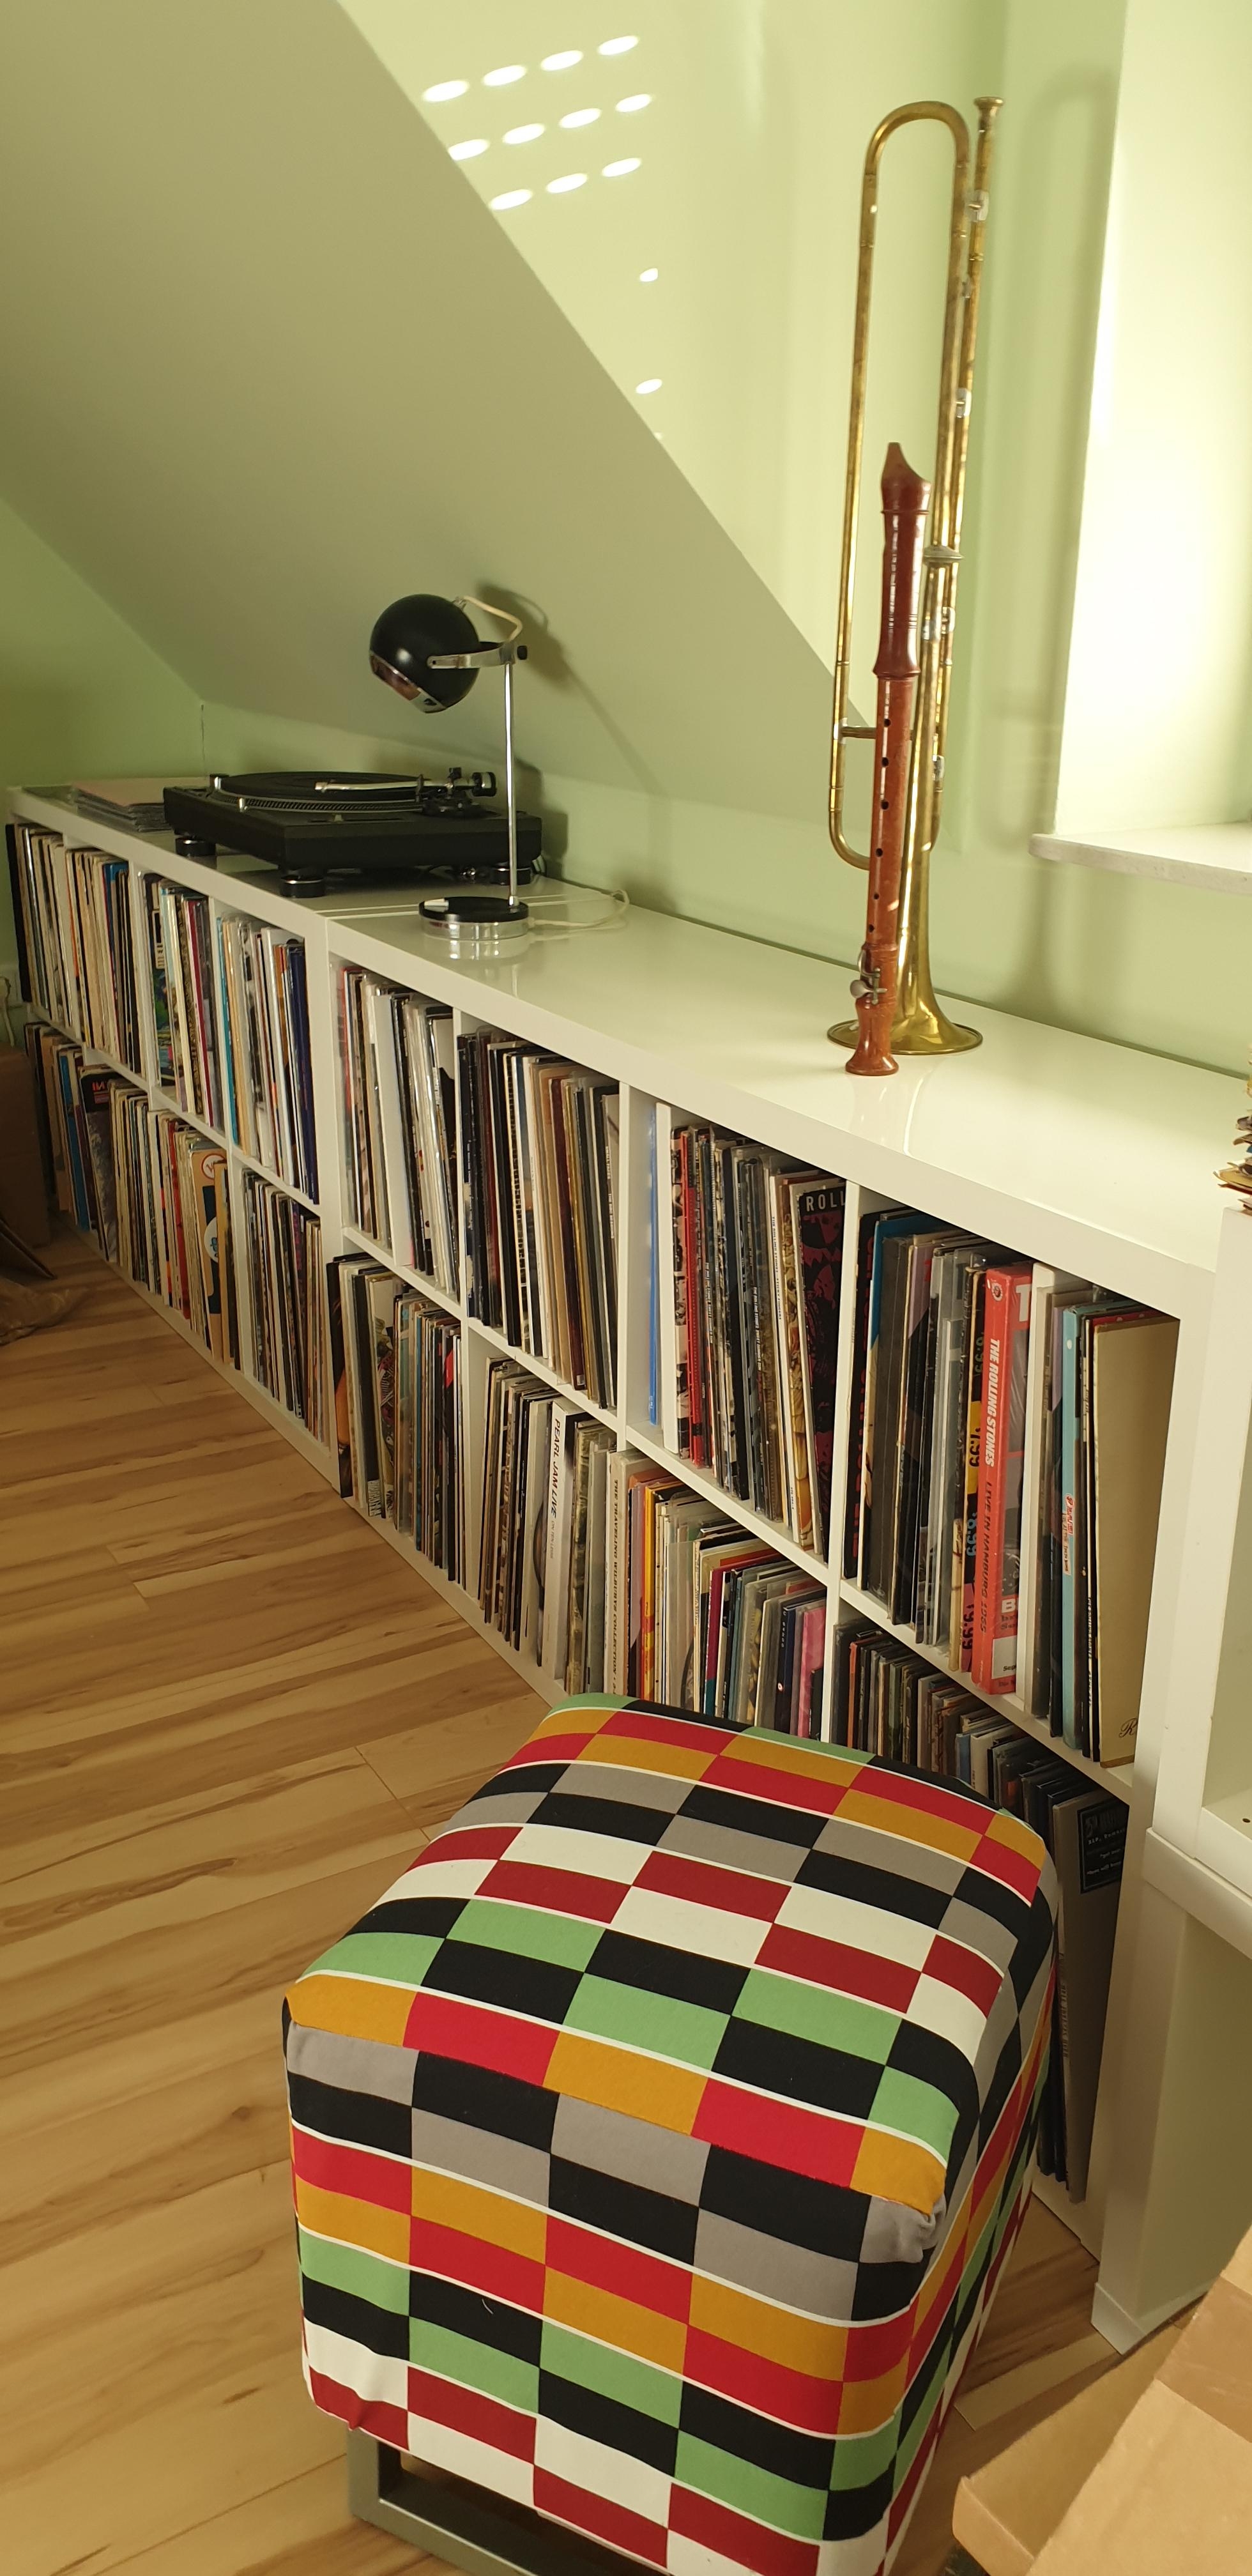 #Mid Century , #Vintage #Schallplatten #Vinyl #Musik gibt es in Hülle und Fülle bei uns im Haus ....